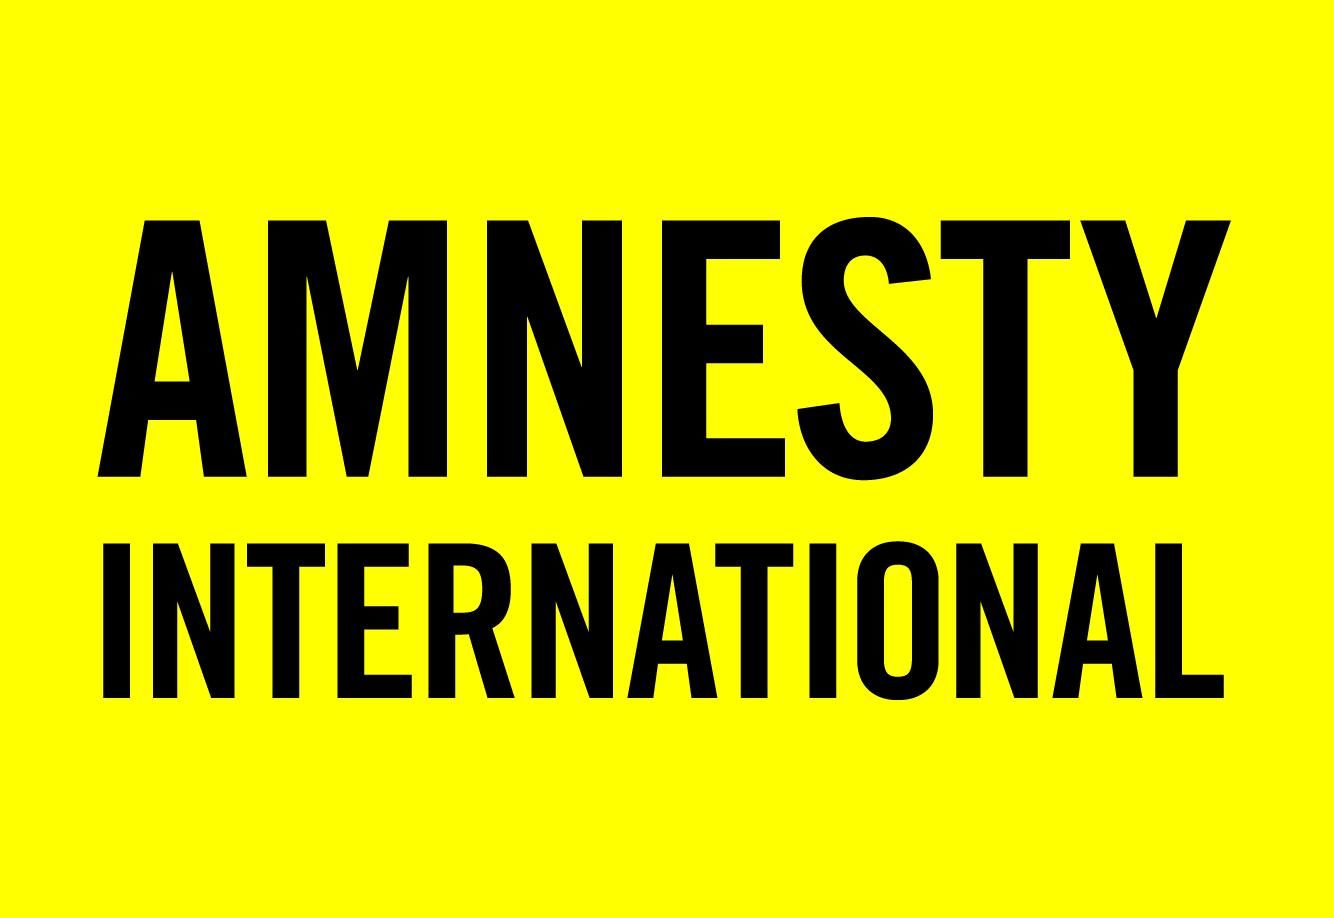 Есть надежда: военнопленные и заложники должны быть репатриированы – украинский офис Amnesty International